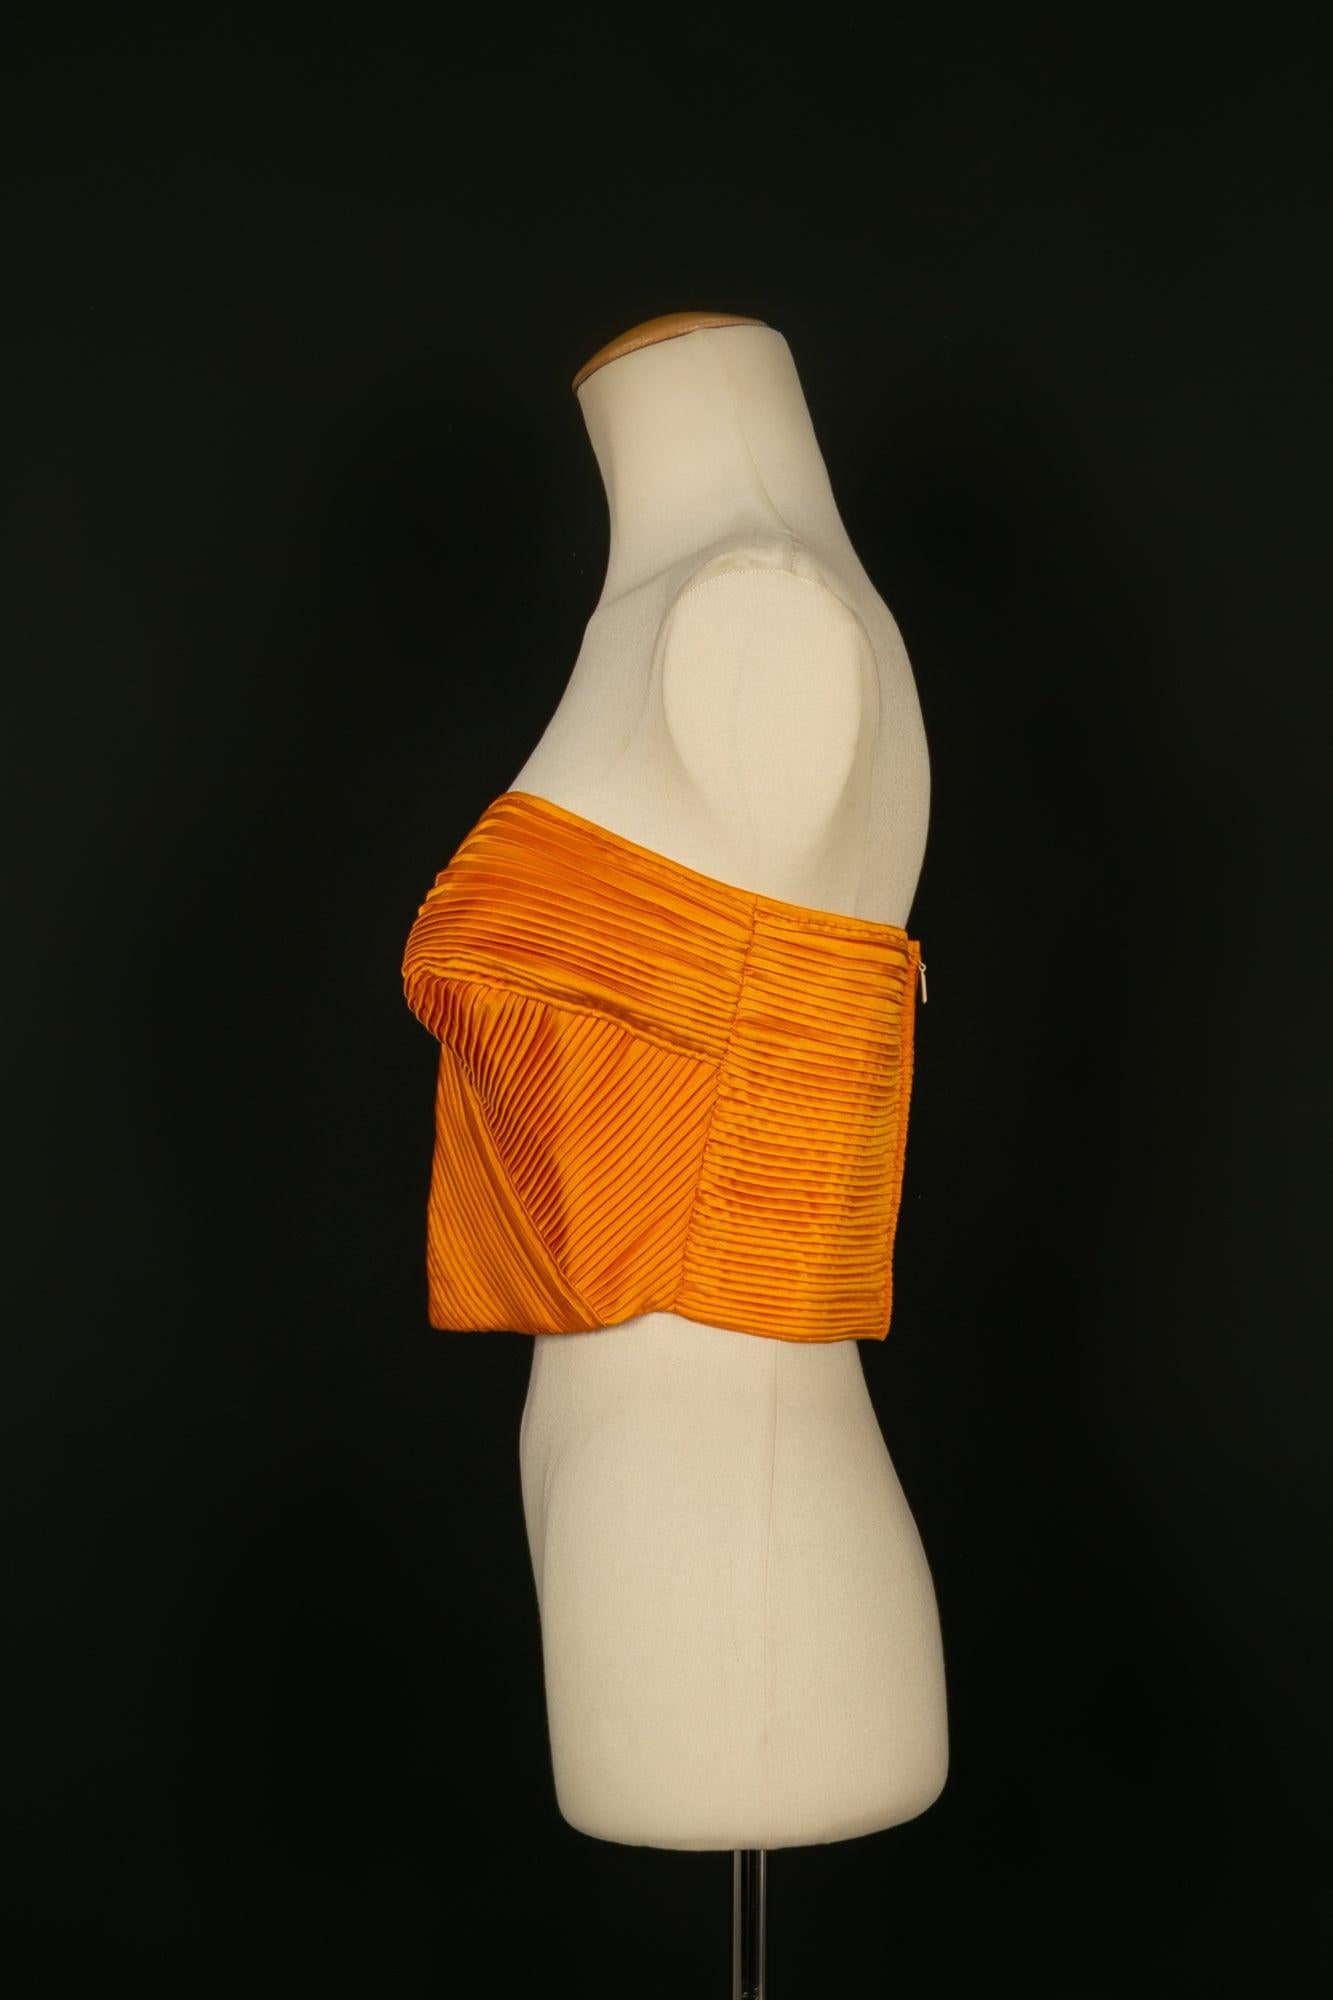 Valentino - Top bustier plissé en soie orange. Il n'y a pas de Label de taille, il convient à un 36FR.

Informations complémentaires :
Condit : Très bon état.
Dimensions : Poitrine : 42 cm

Référence du vendeur : FH140
